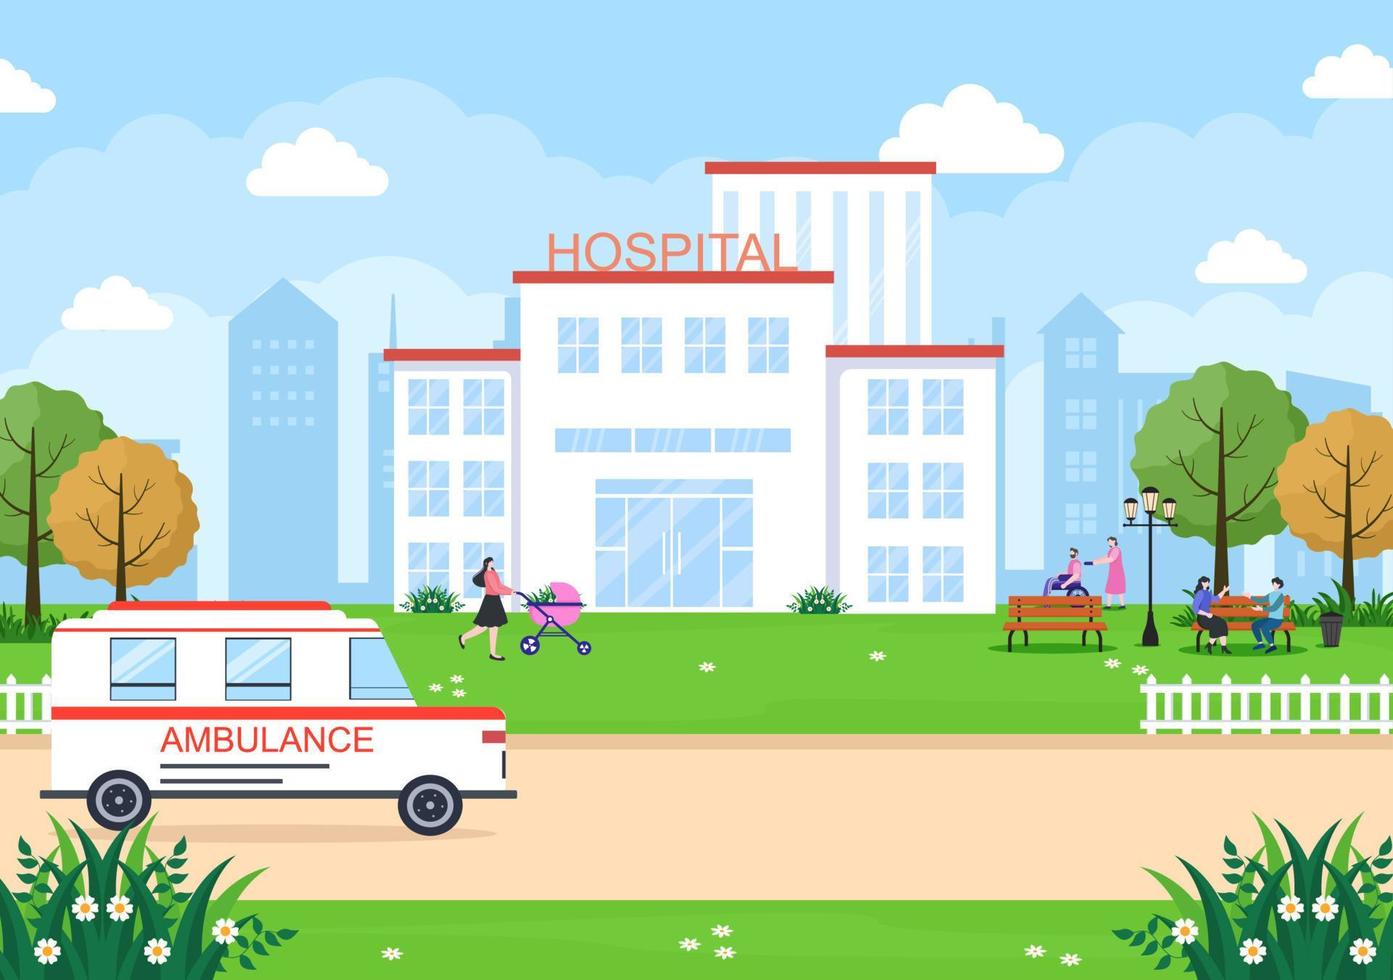 bâtiment de l'hôpital pour l'illustration vectorielle de fond de soins de santé avec, voiture d'ambulance, médecin, patient, infirmières et extérieur de la clinique médicale vecteur